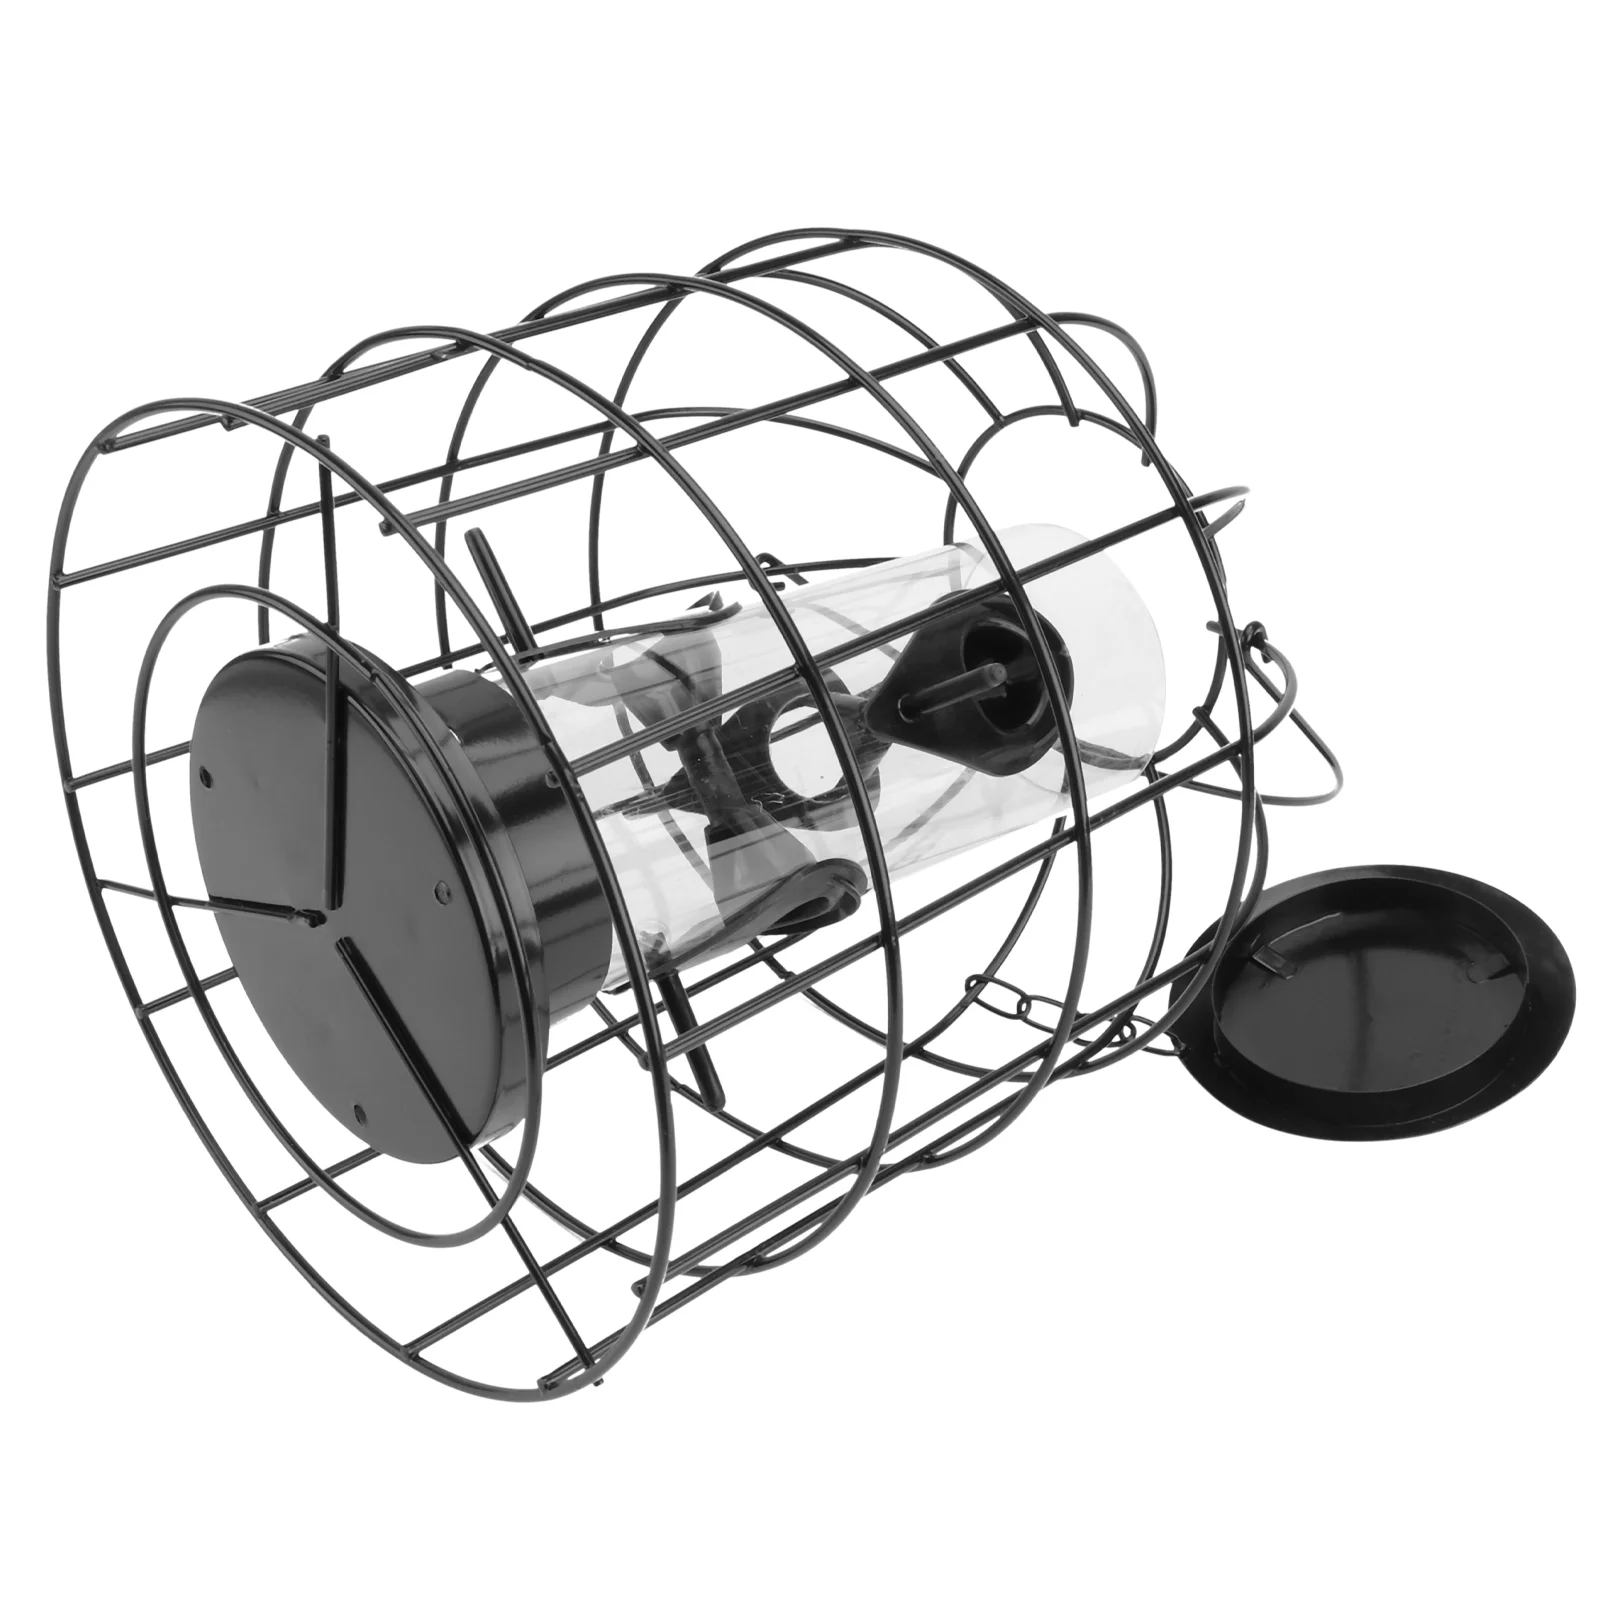 

Поликарбонат, устройство для кормления диких птиц в саду, уличная клетка, контейнер для еды, железная кормушка для птиц